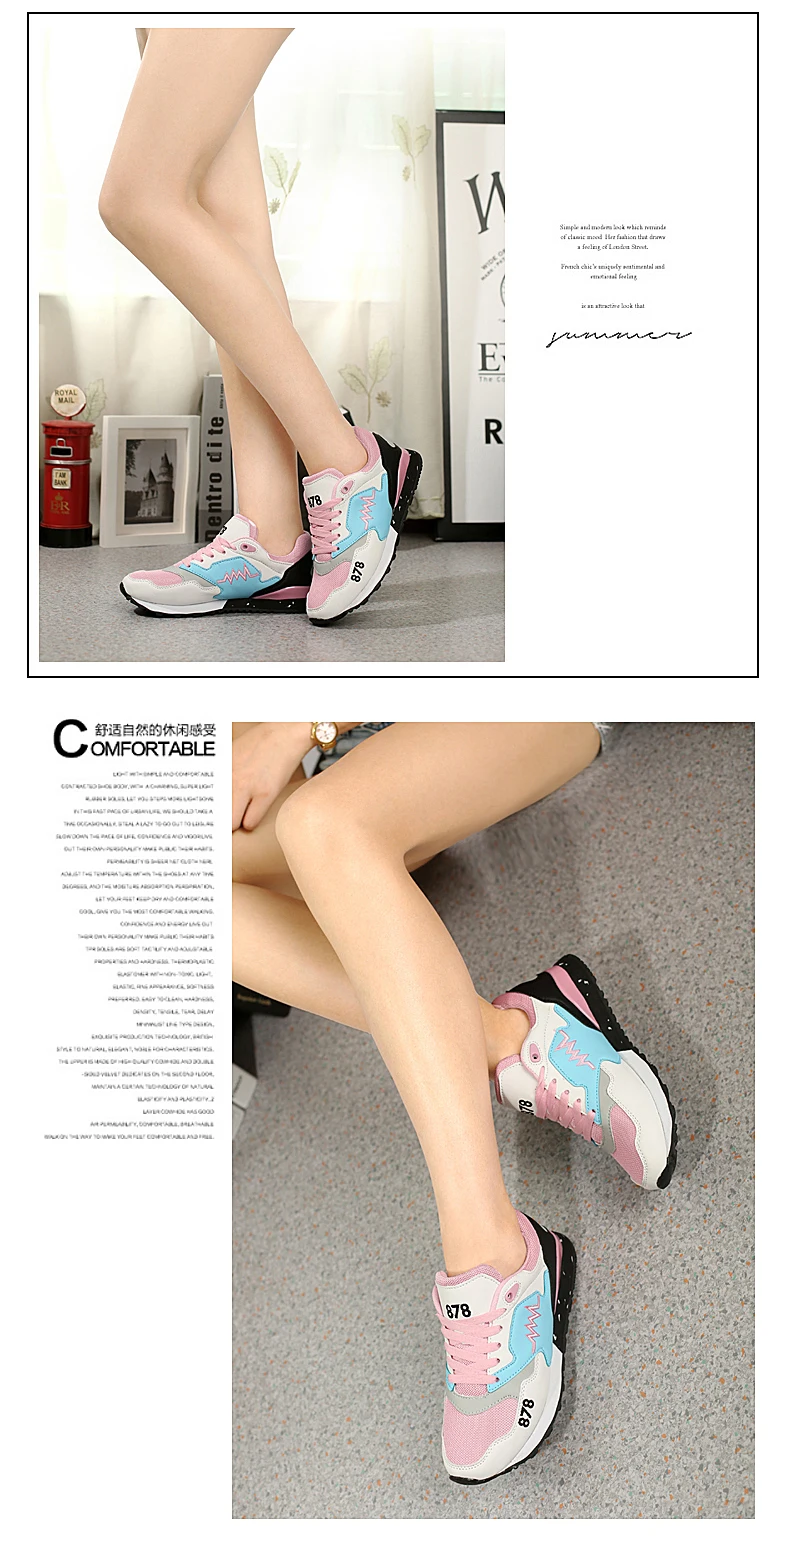 Женская обувь для бега; Легкие женские кроссовки для занятий спортом на открытом воздухе; парусиновая обувь для любителей прогулок; спортивная обувь для тенниса; кроссовки для бадминтона